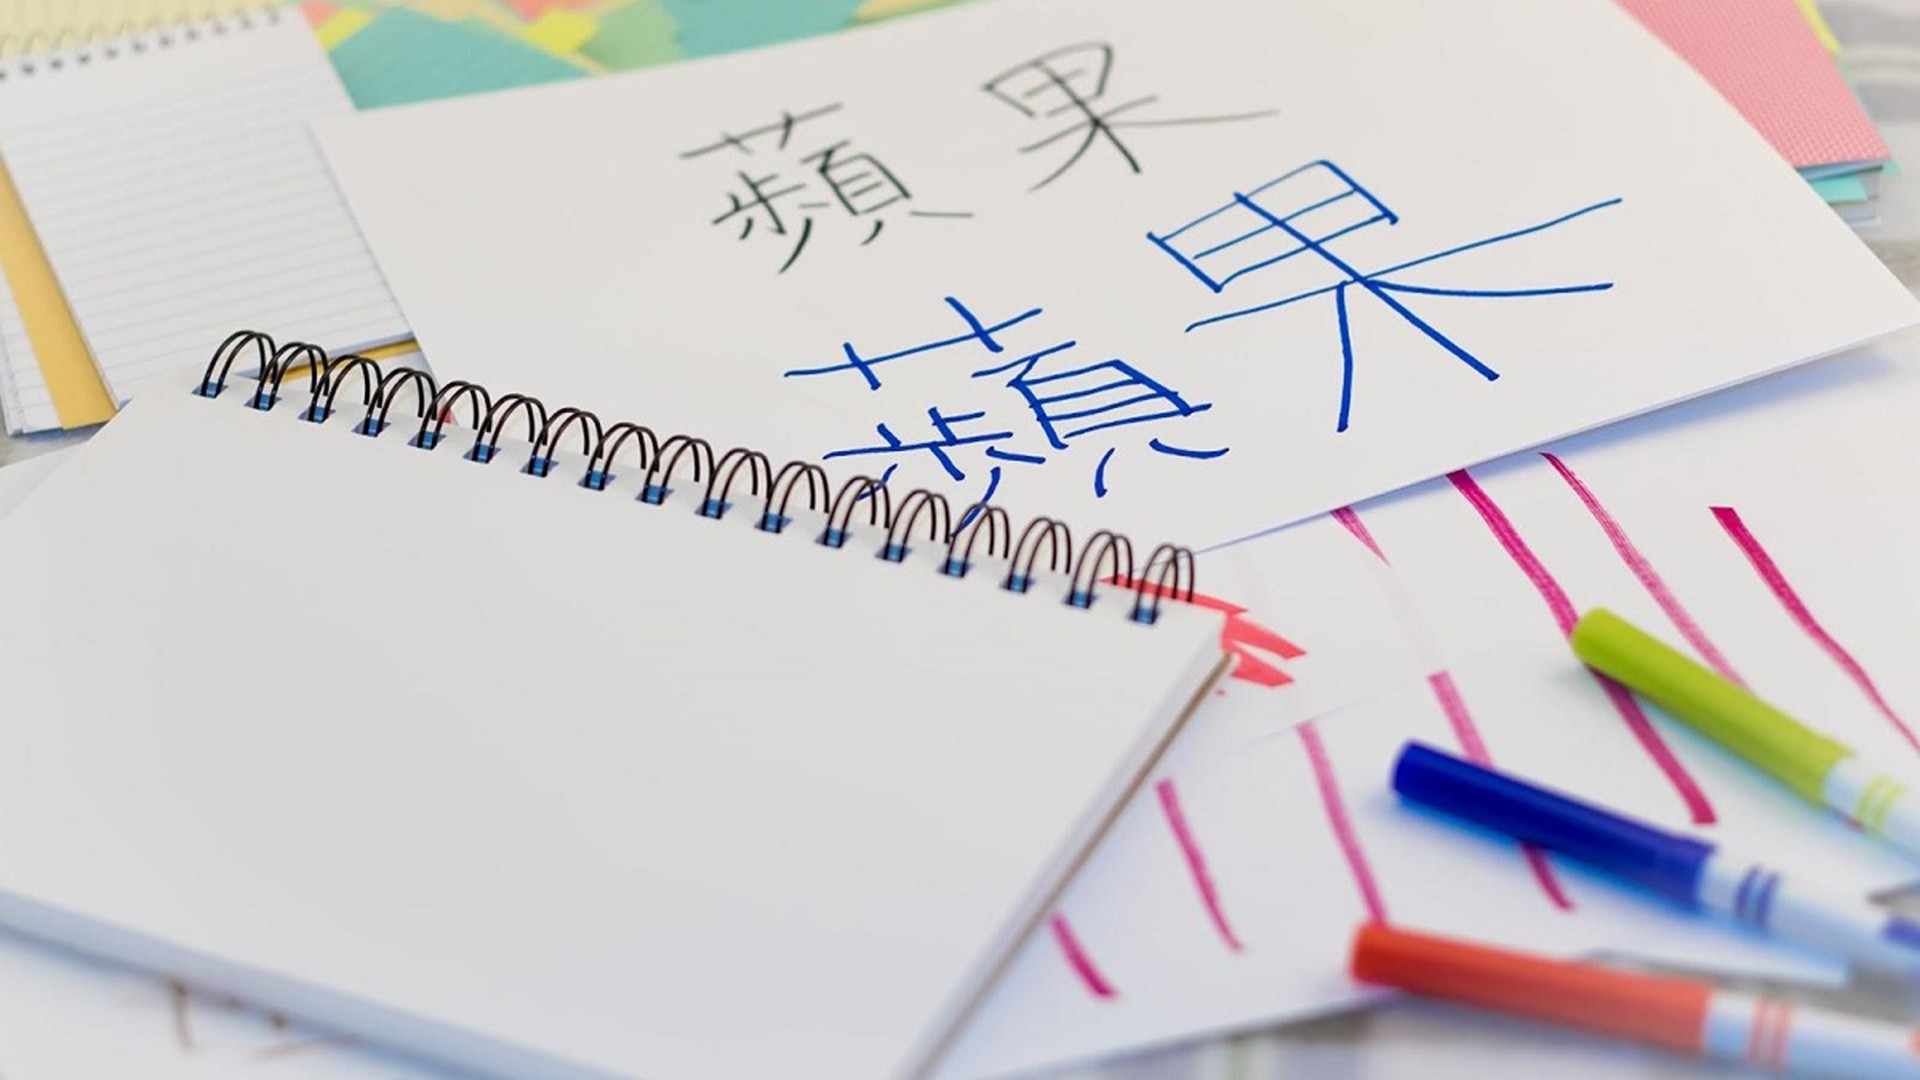 Top 10 trung tâm uy tín dạy tiếng Trung cơ bản cho người mới bắt đầu